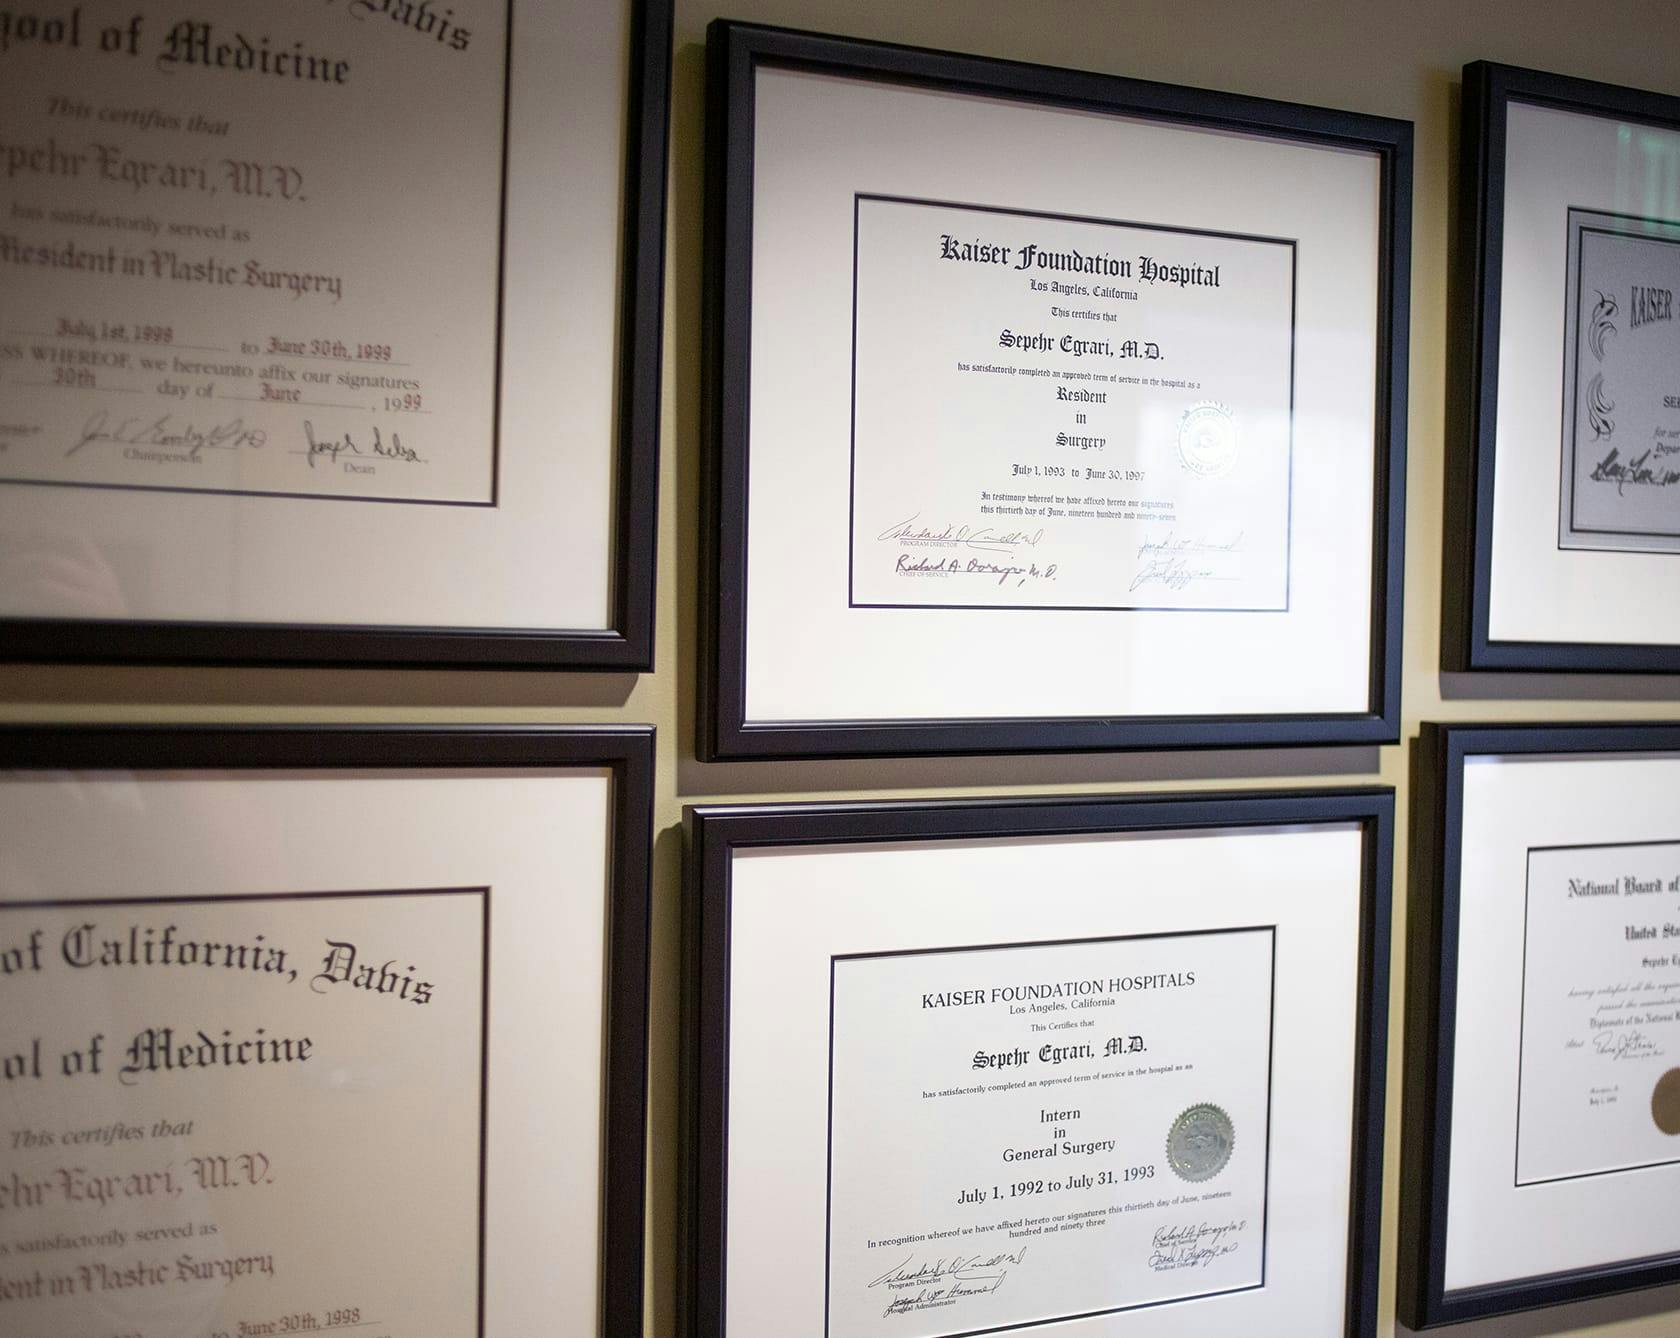 an image of Dr. Egrari's certificates